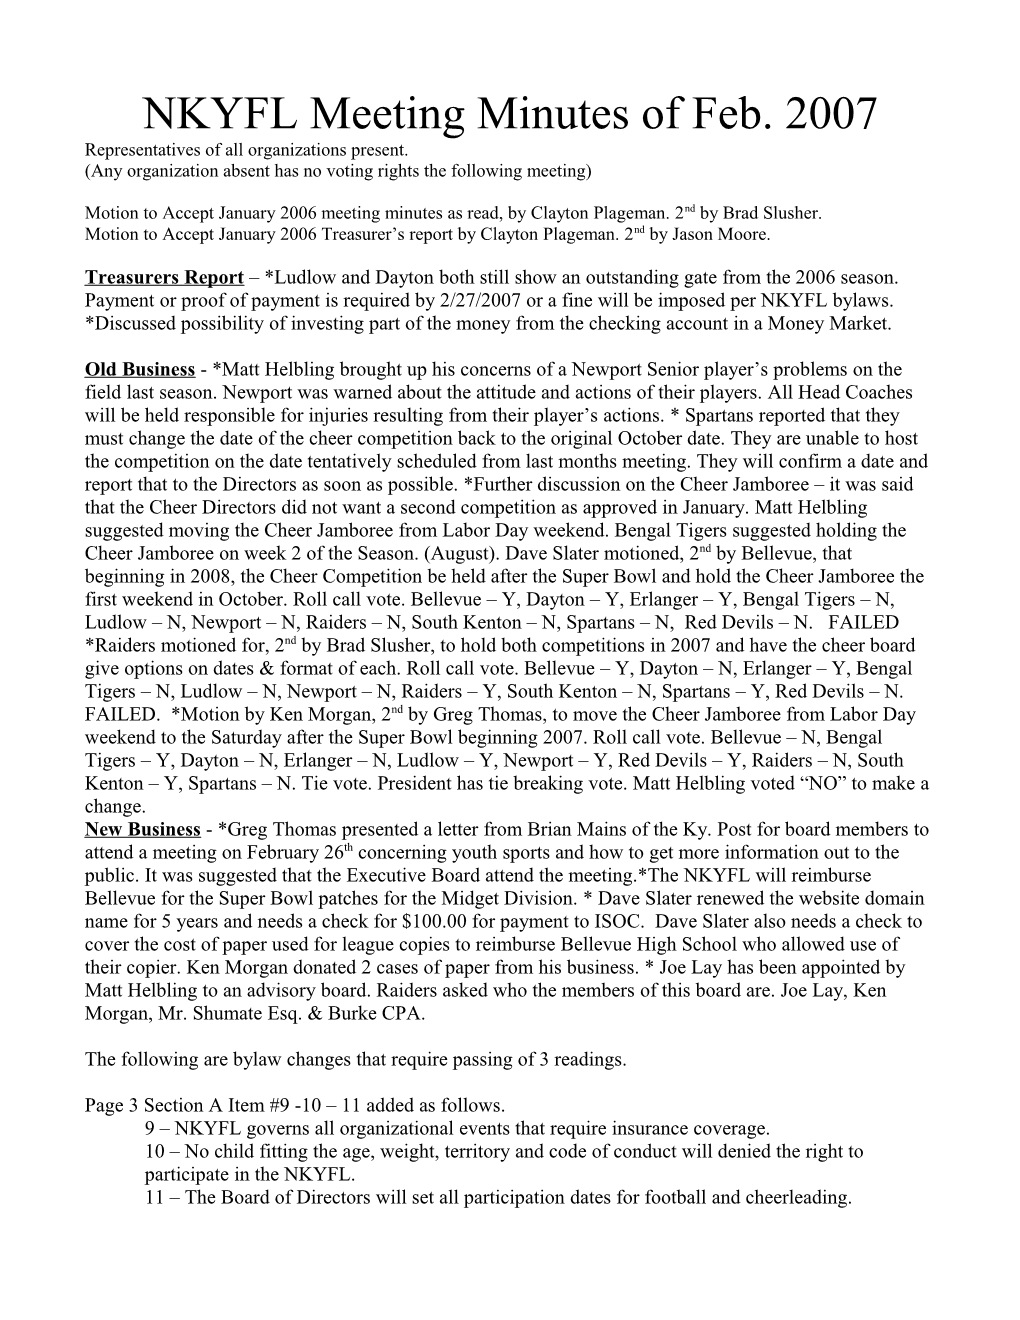 NKYFL Meeting Minutes of December 2005